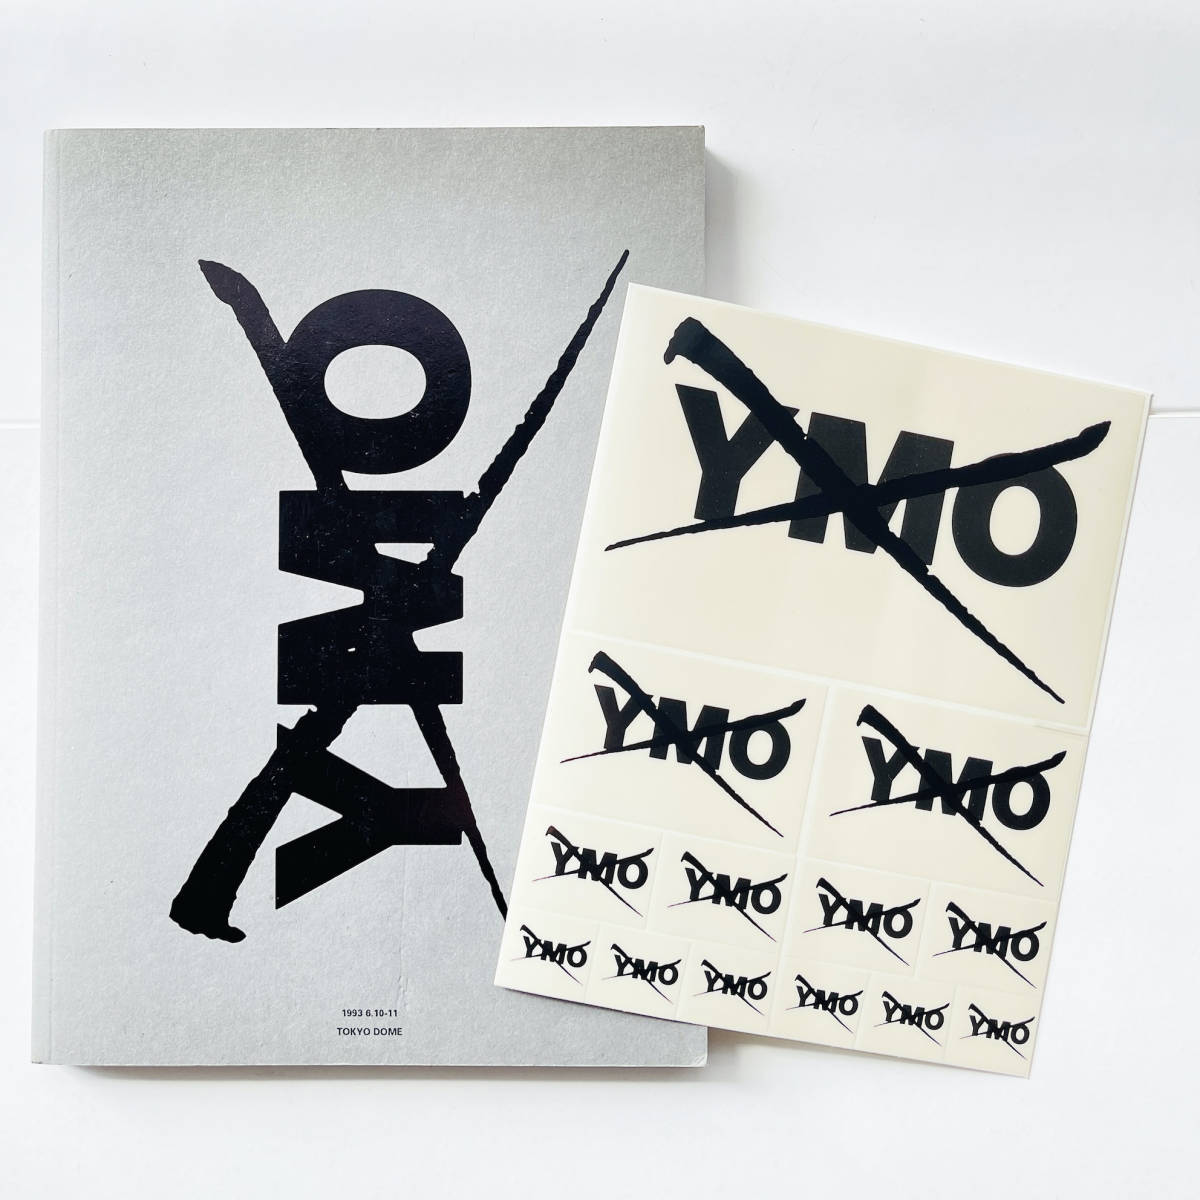  ценный стикер имеется концерт проспект ( YMO - 1993 6.10-11 TOKYO DOME ) искусство основная спецификация / Sakamoto Ryuichi Hosono Haruomi высота ..